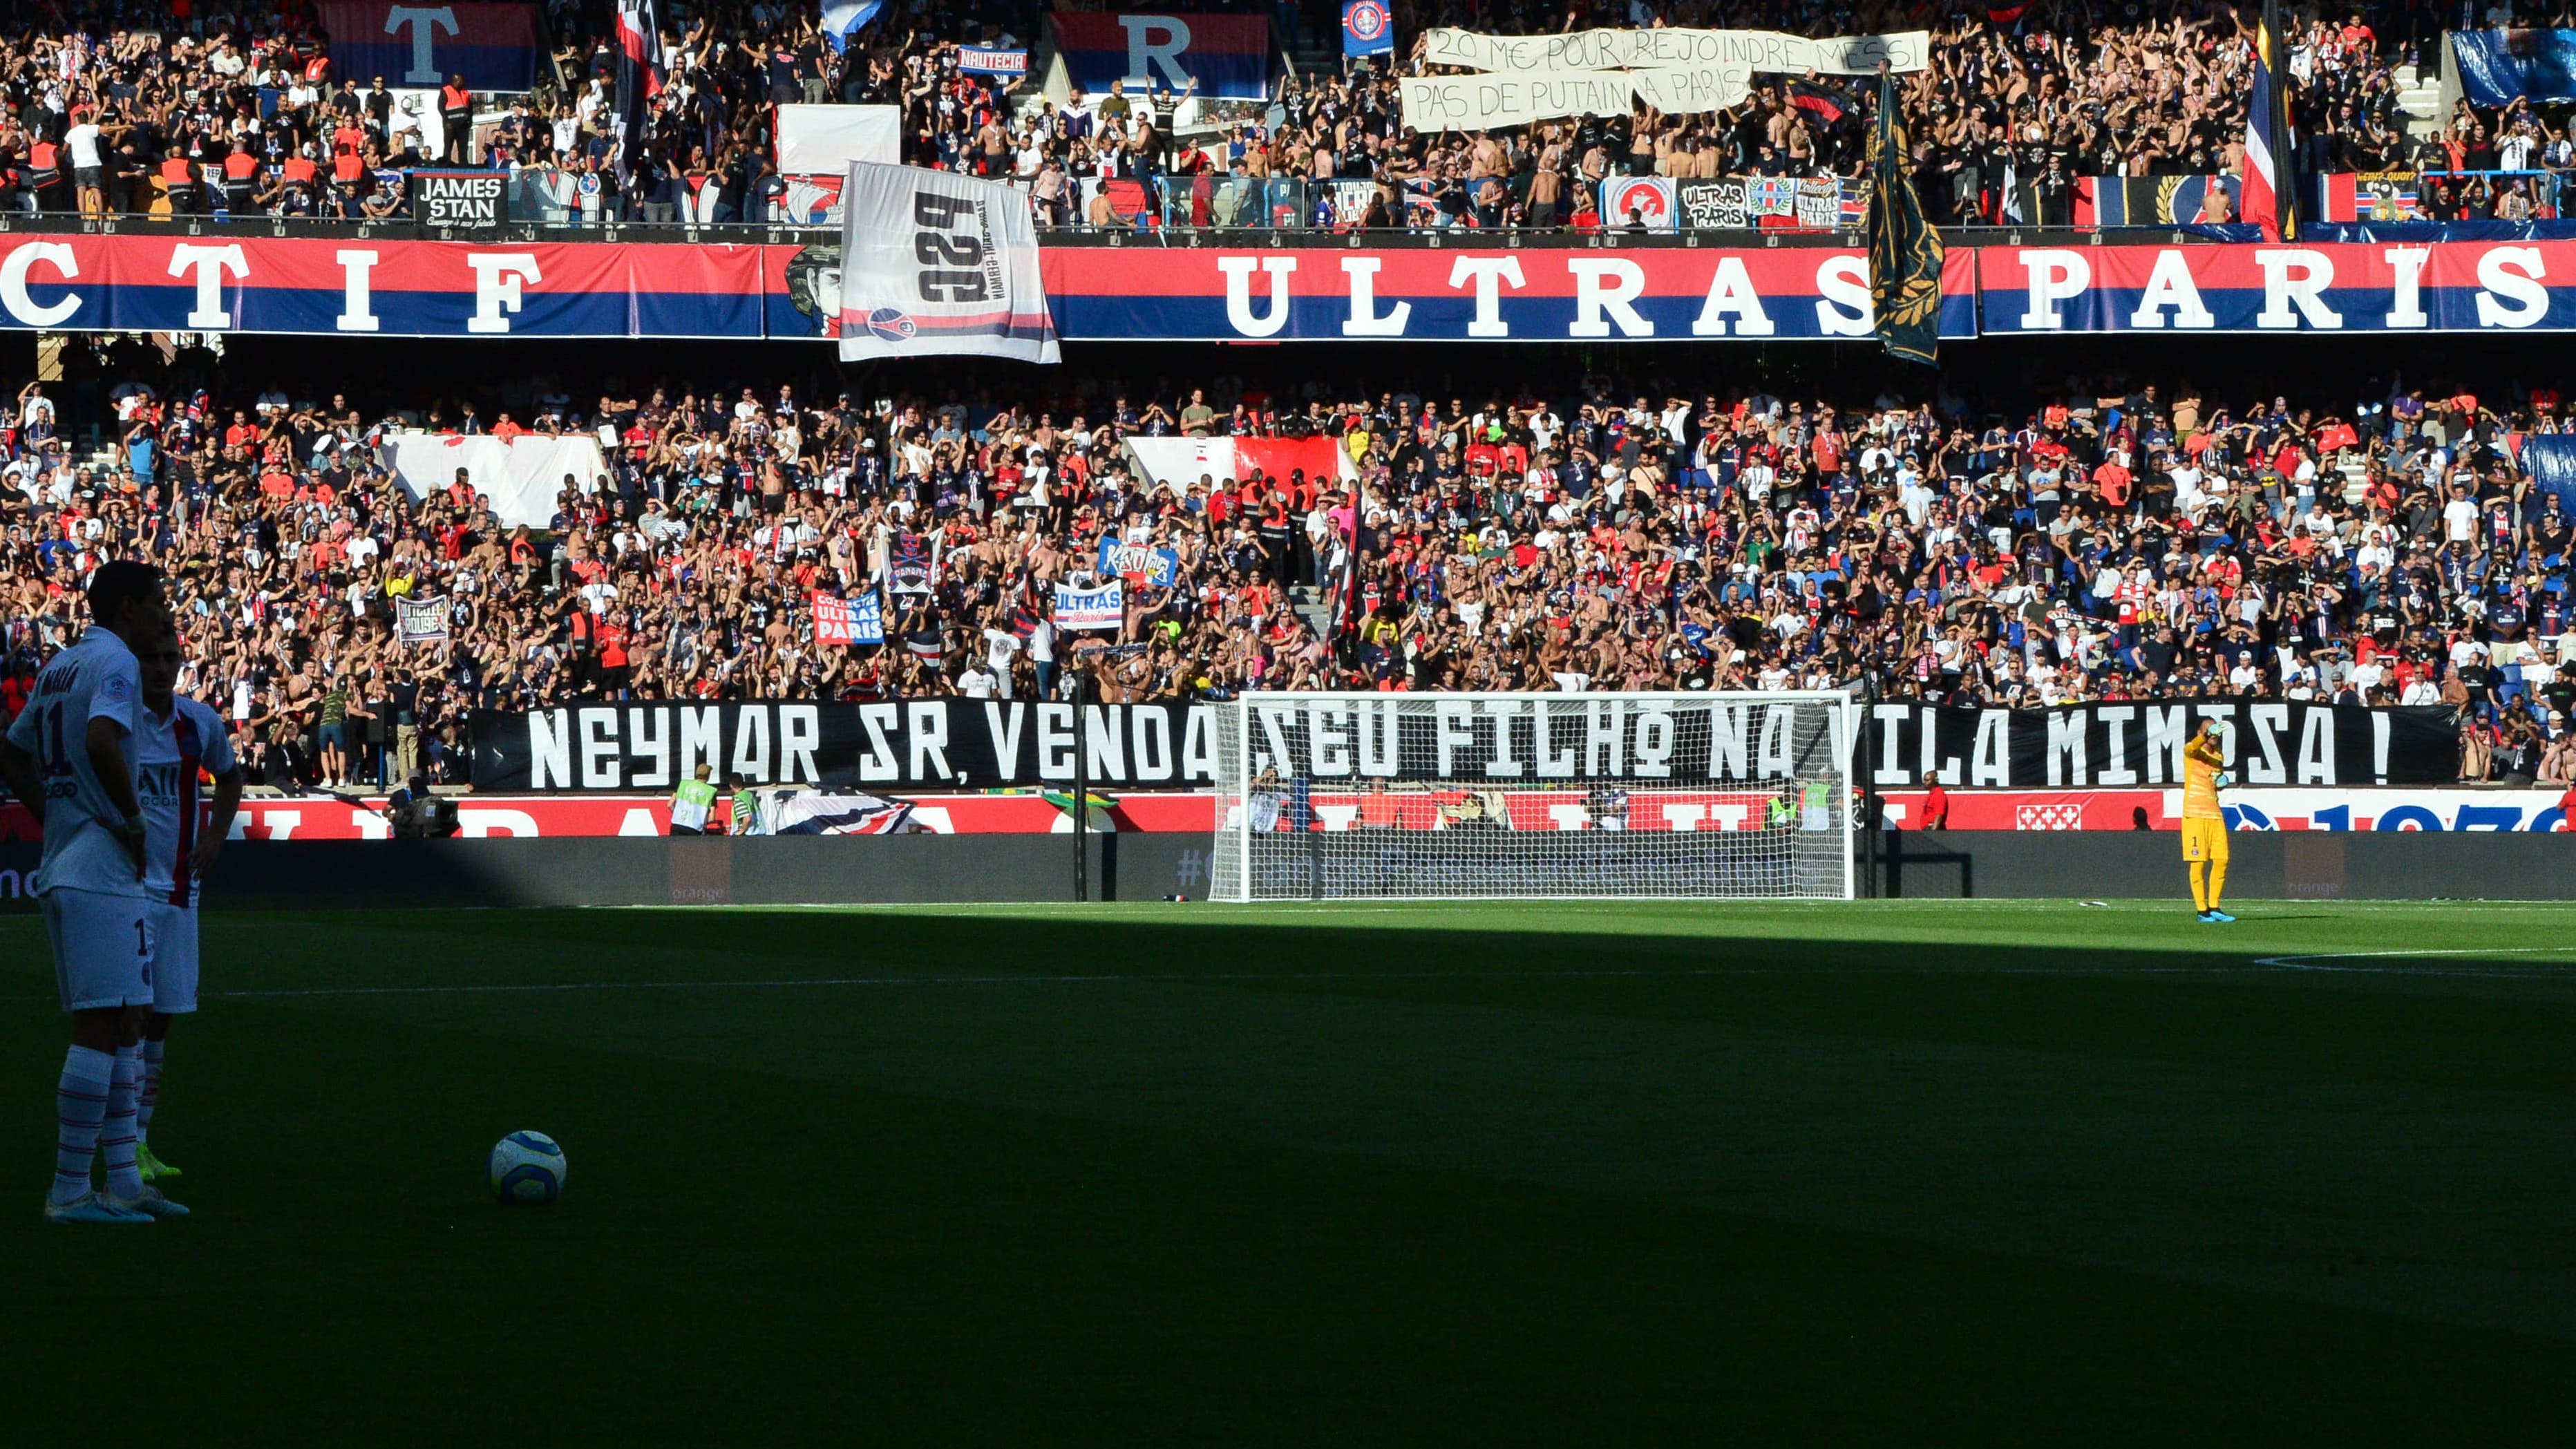 PSG-Strasbourg: Neymar et son père visés par des banderoles injurieuses